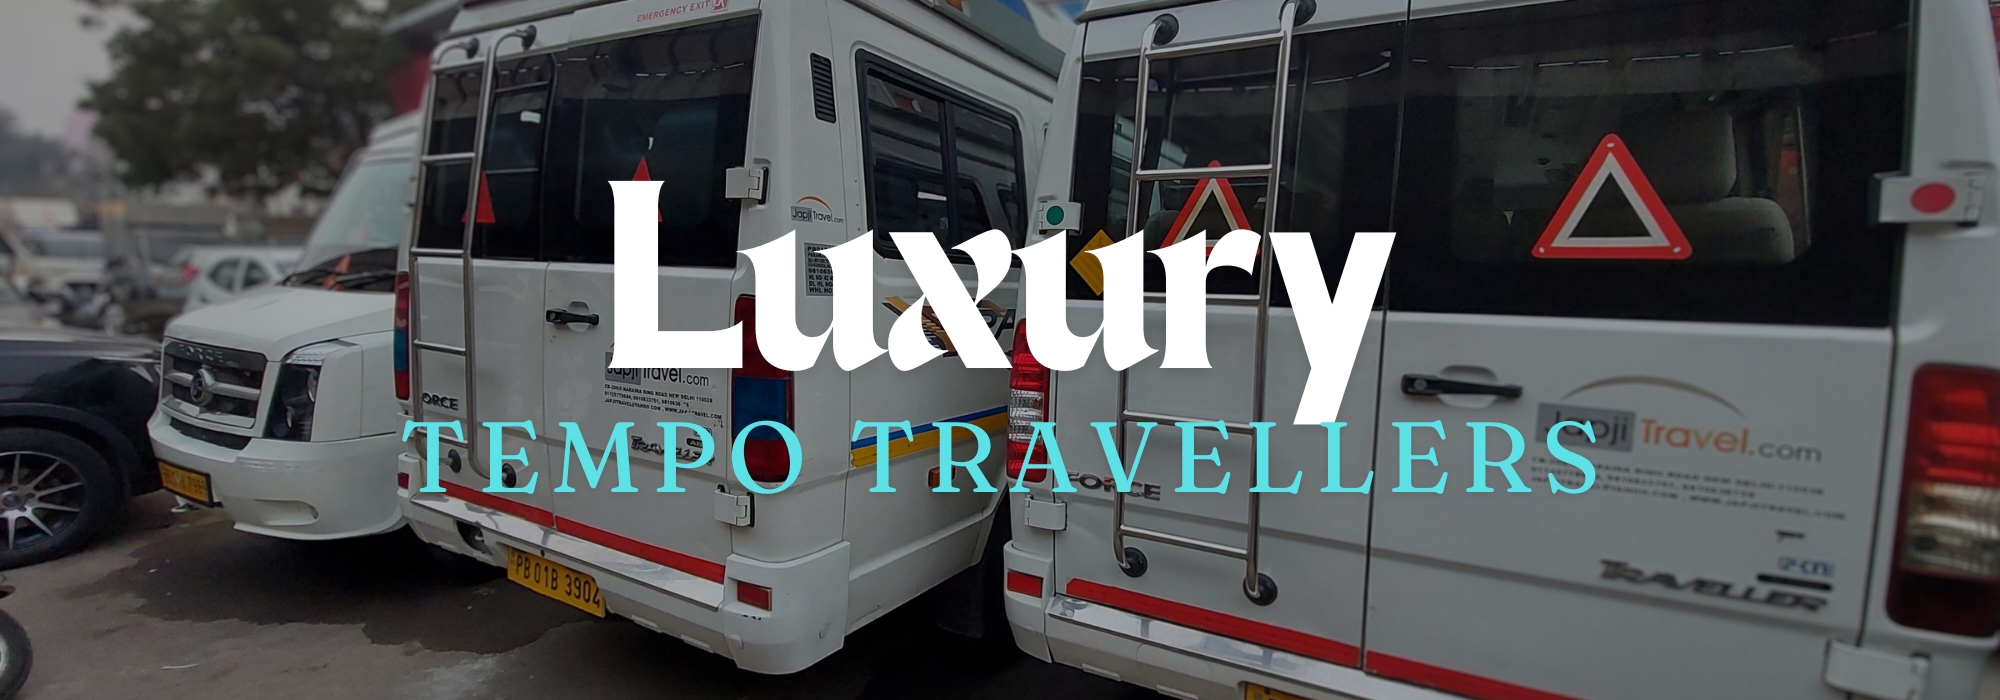 luxury tempo traveller banner